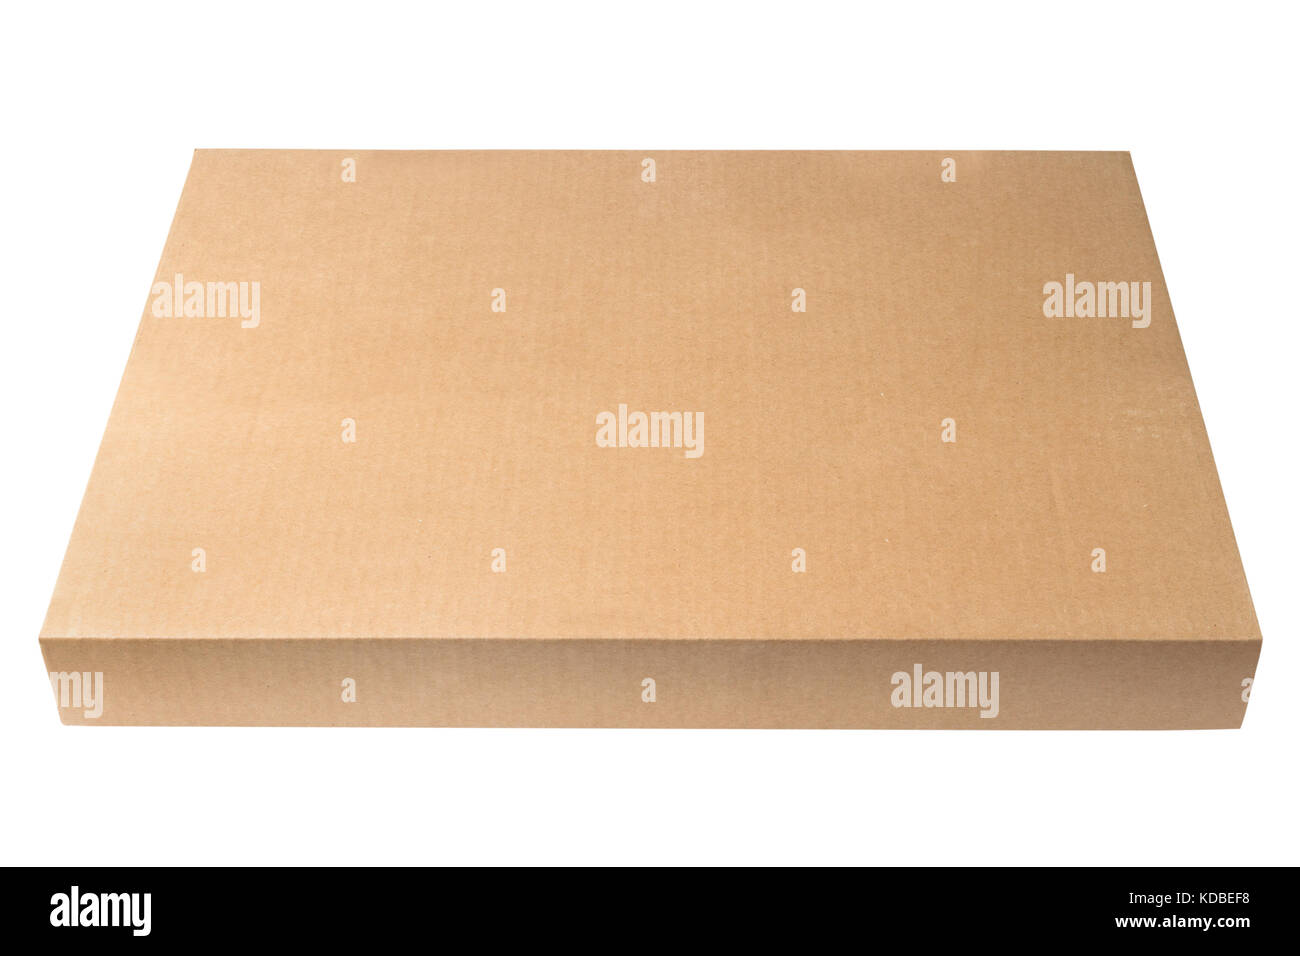 Caja de cartón delgado e imágenes de alta resolución Alamy